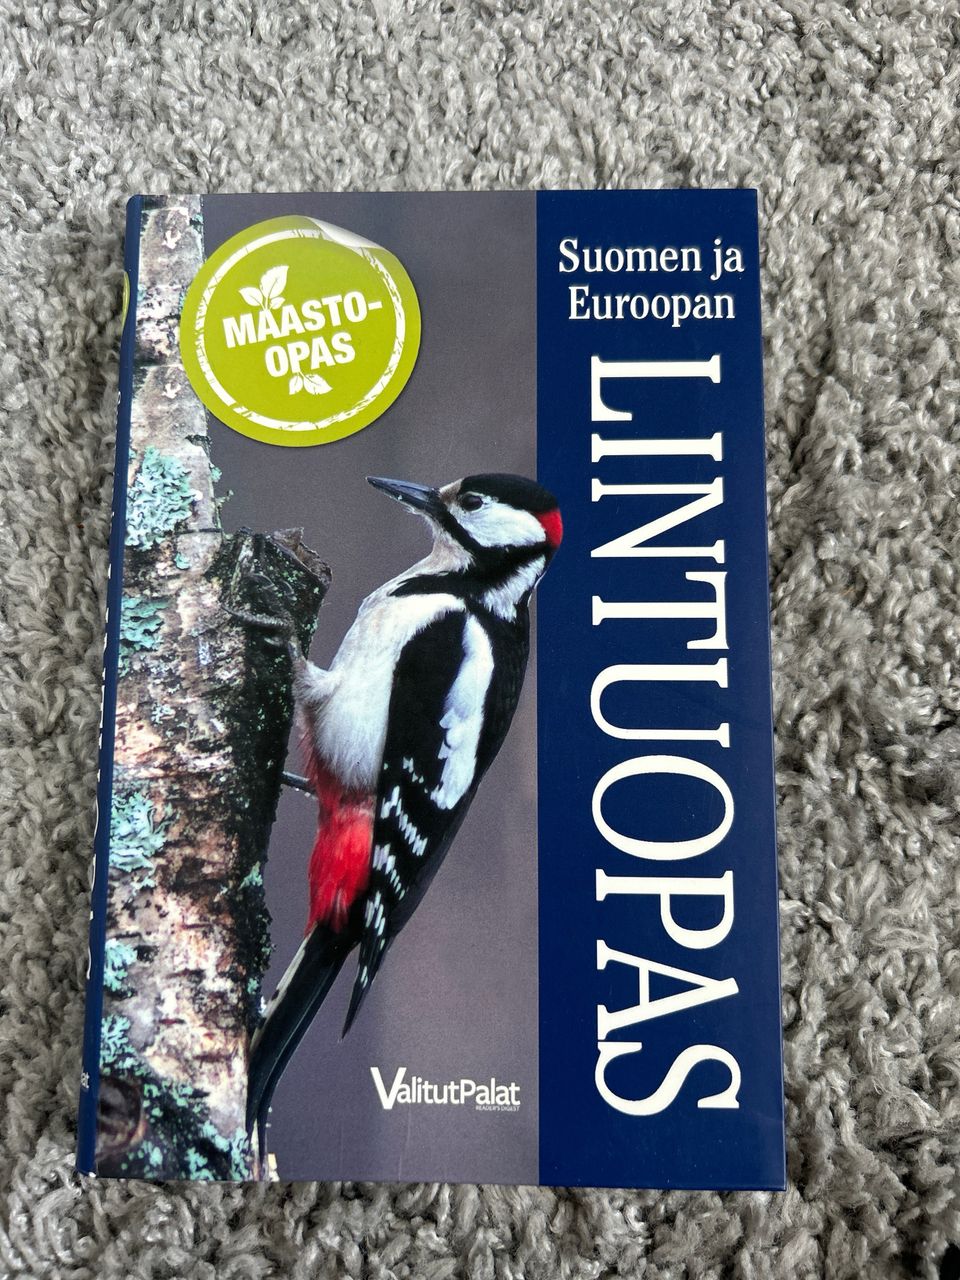 Lintuopas (Suomen ja Euroopan)